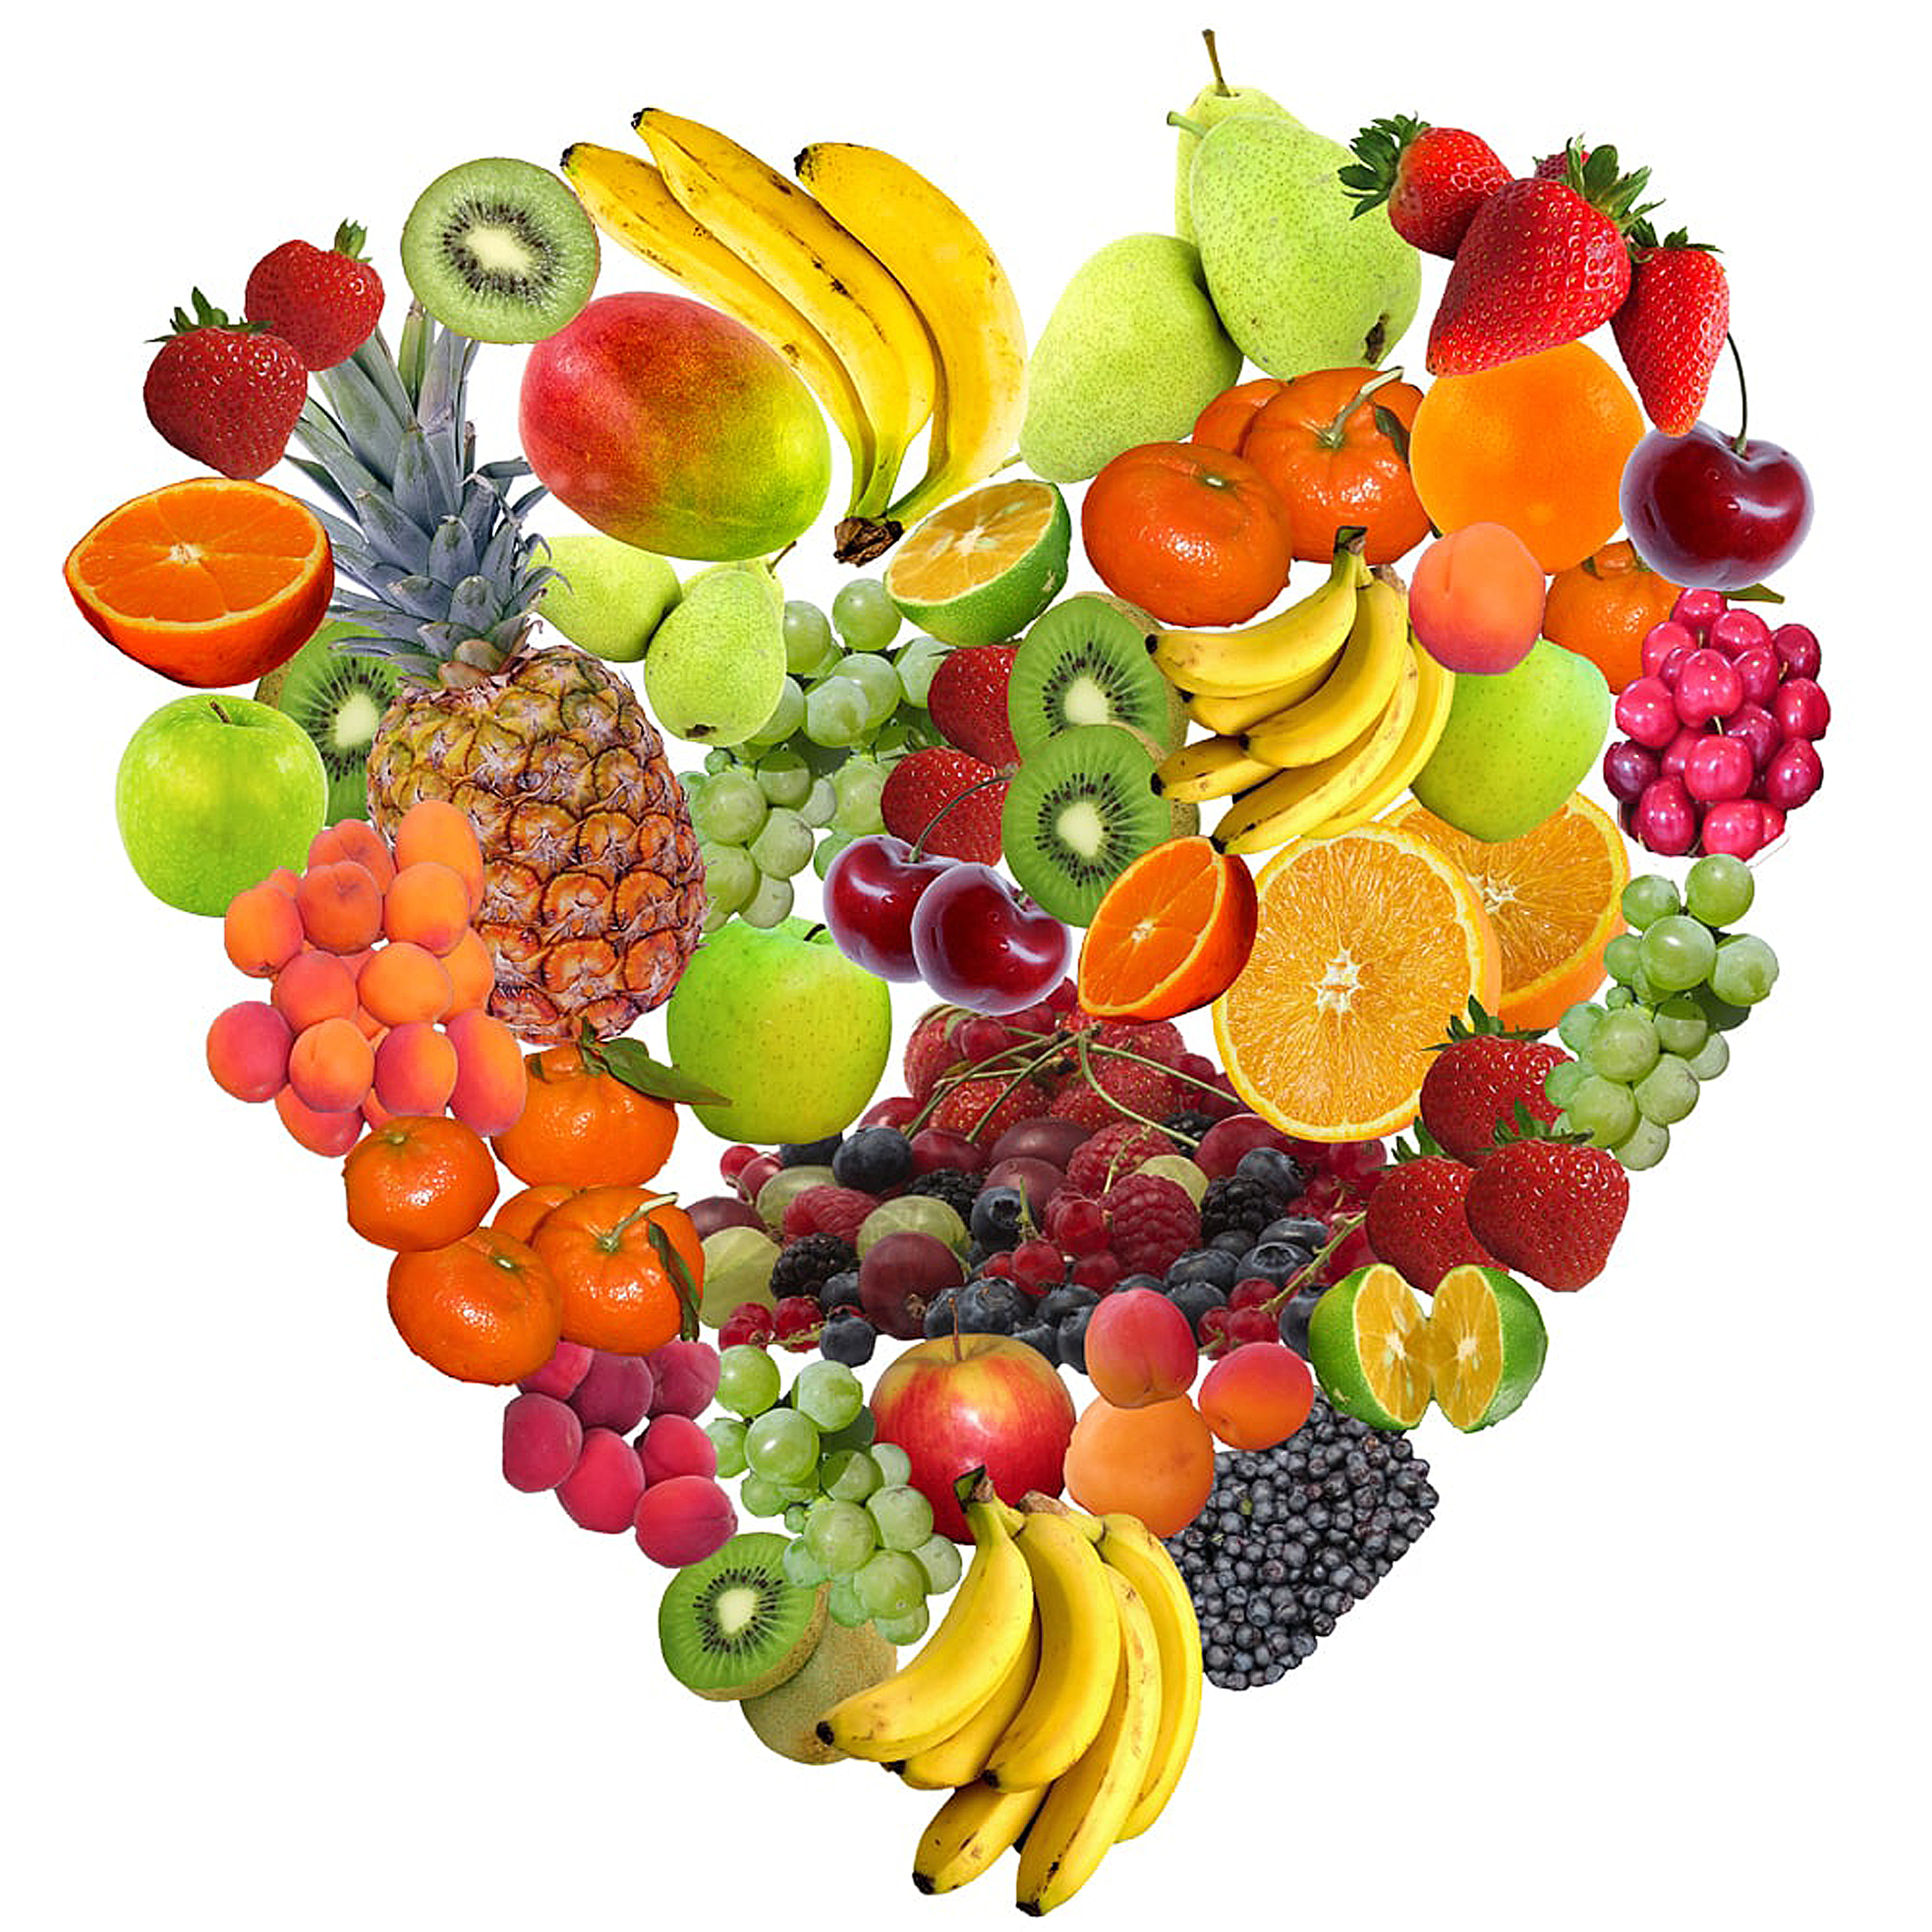 Jeden Tag Obst und Gemüse essen für eine gesunde Ernährung.